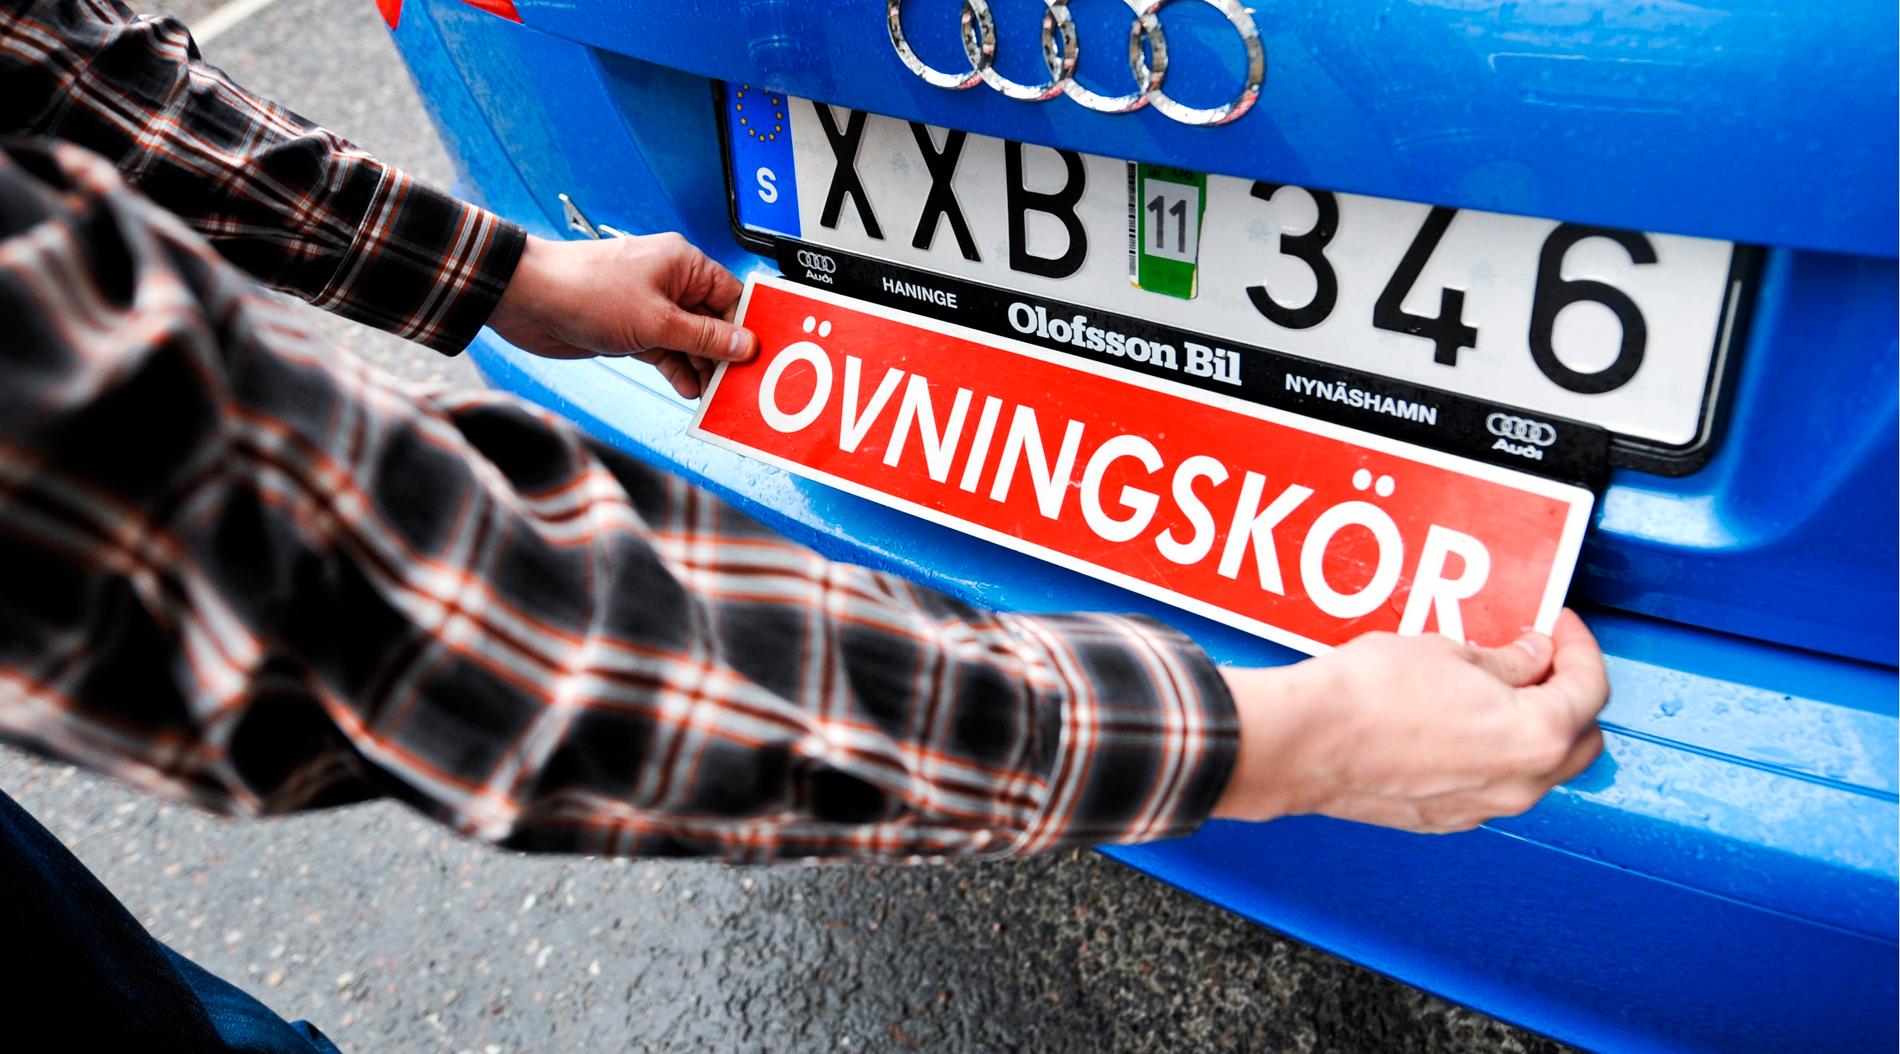 Den norske polisen Kåre Munkvold säger att mannen inte kommer att få körkort i första taget